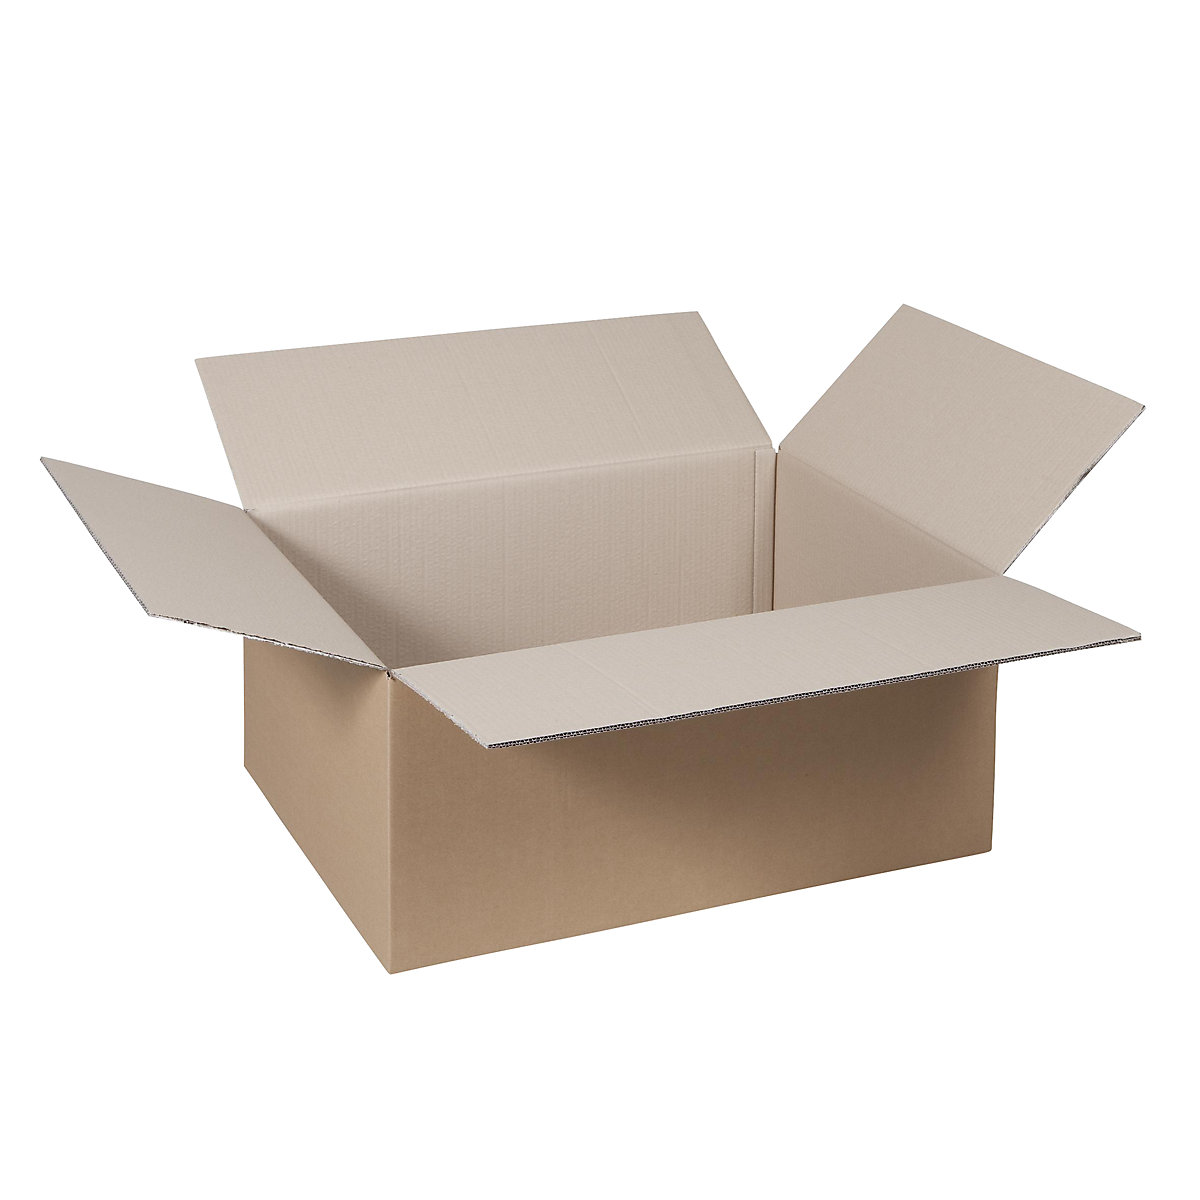 Cutie de carton pliantă, FEFCO 0201, cu 2 straturi de carton ondulat, dimensiuni interioare 390 x 290 x 200 mm, amb. 50 buc.-12